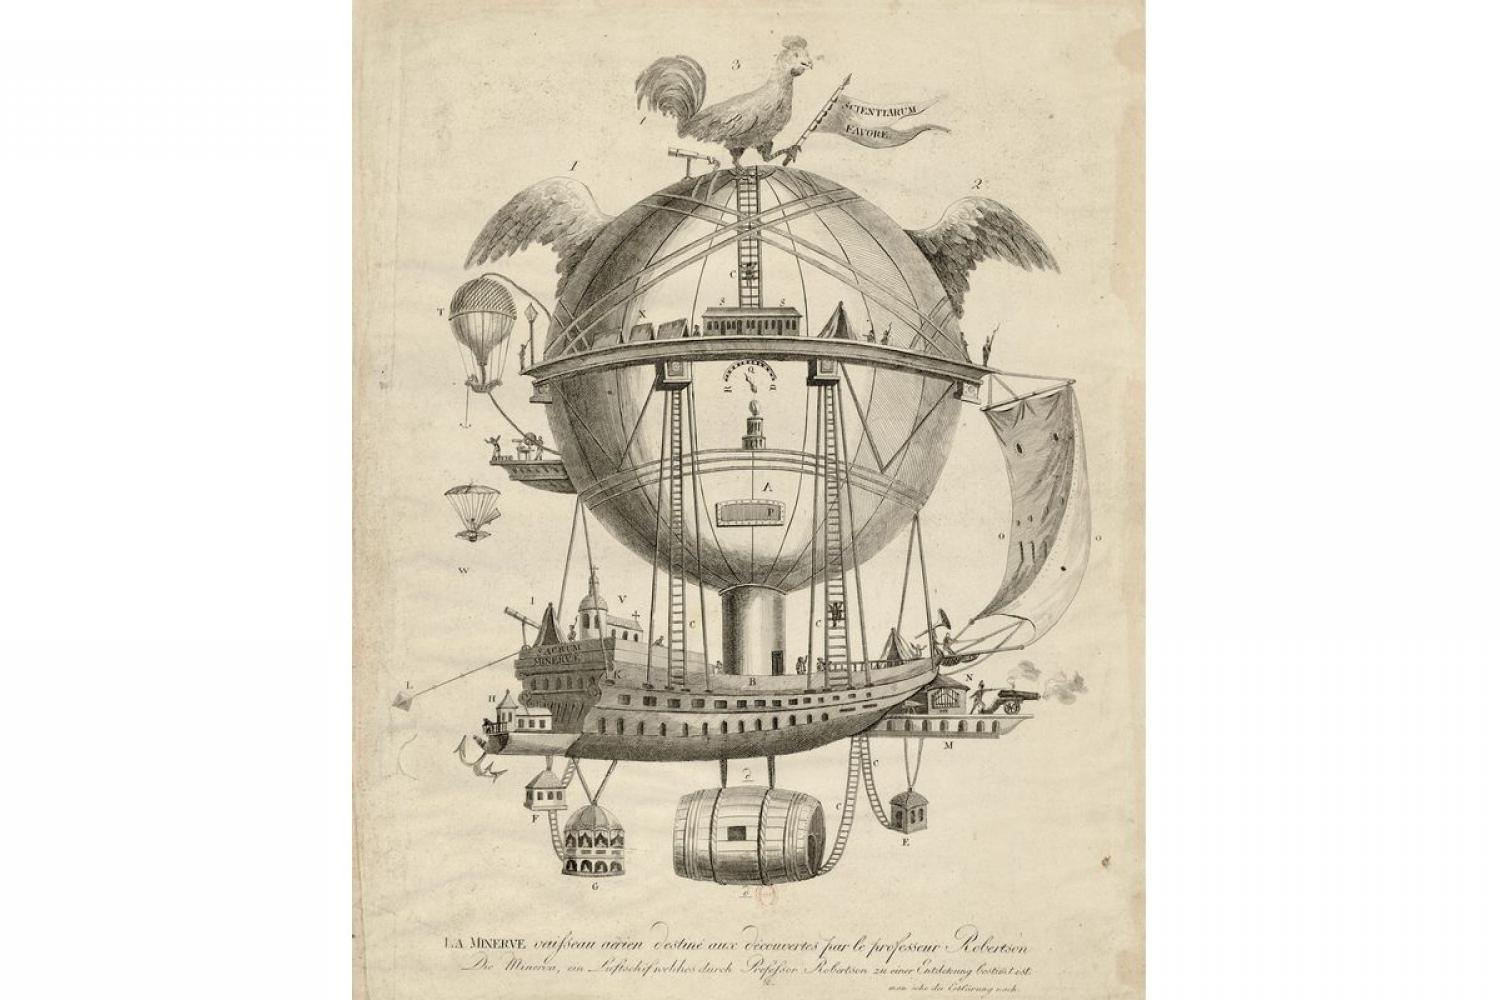 La Minerve, vaisseau aérien destiné aux découvertes par le professeur Robertson - 1826-1830 - BnF, département des Estampes et de la photographie